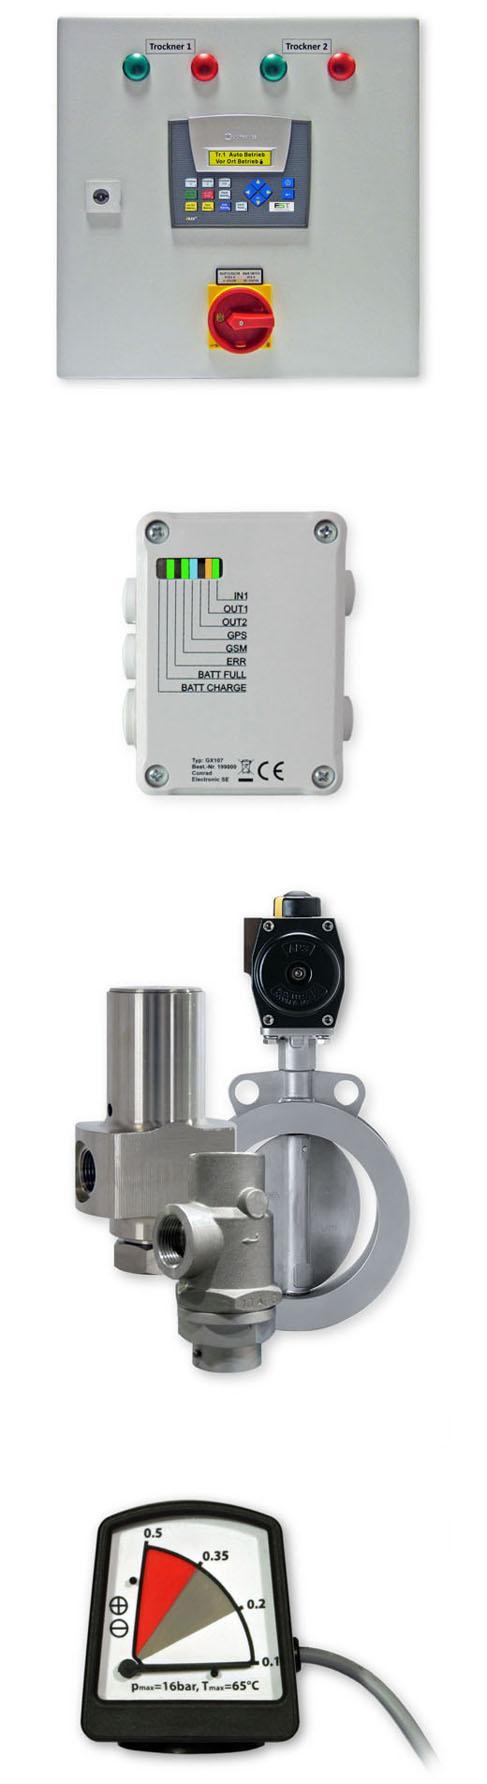 Zubehör Die Umschaltsteuerung DA-CM1-230 ermöglicht die Steuerung von zwei redundanten Drucklufttrocknern in einem Druckluftsystem.